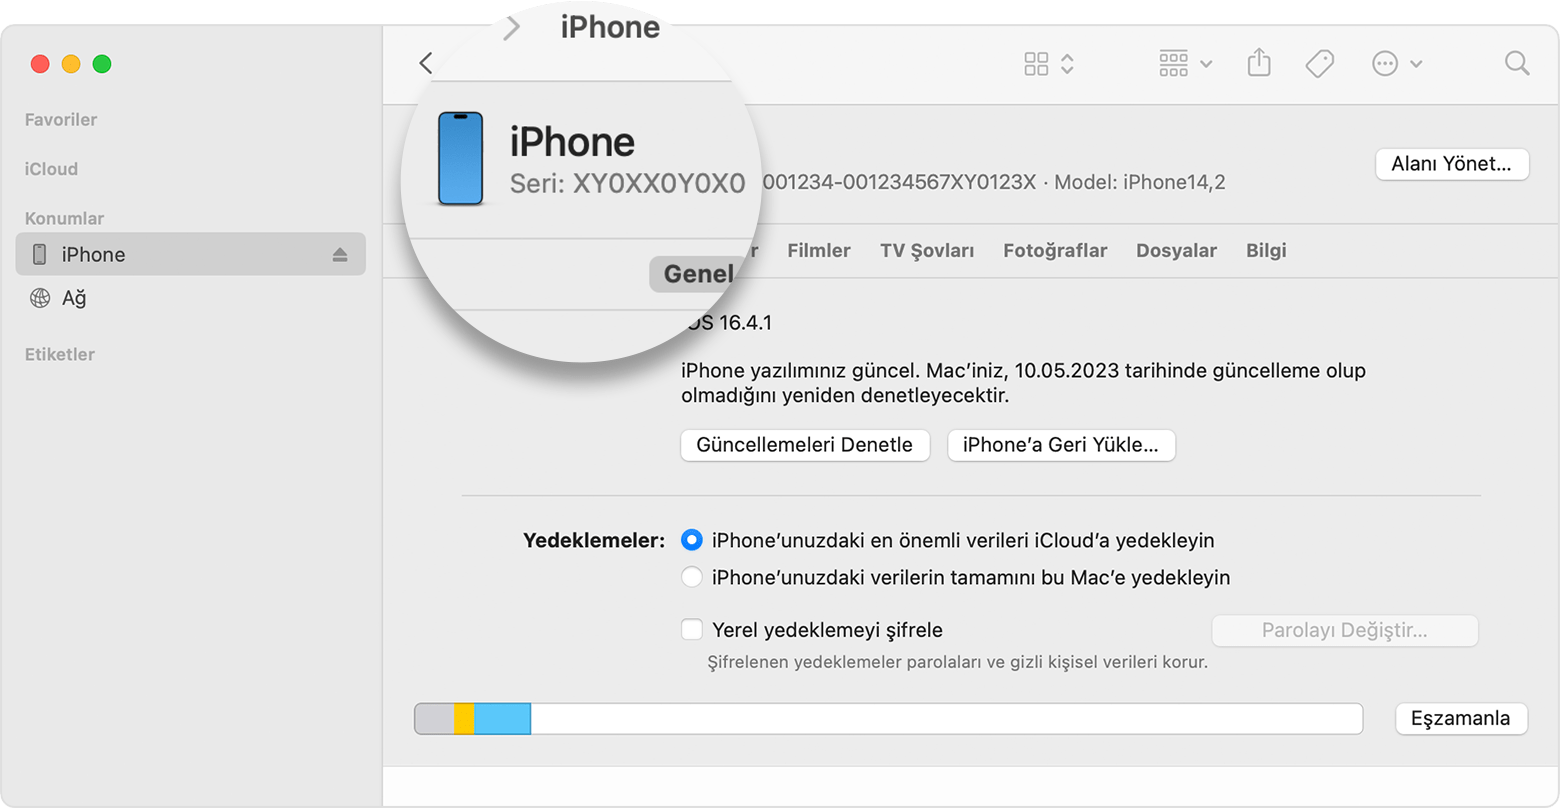 iPhone seri numarasını gösteren Finder penceresinin ekran görüntüsü